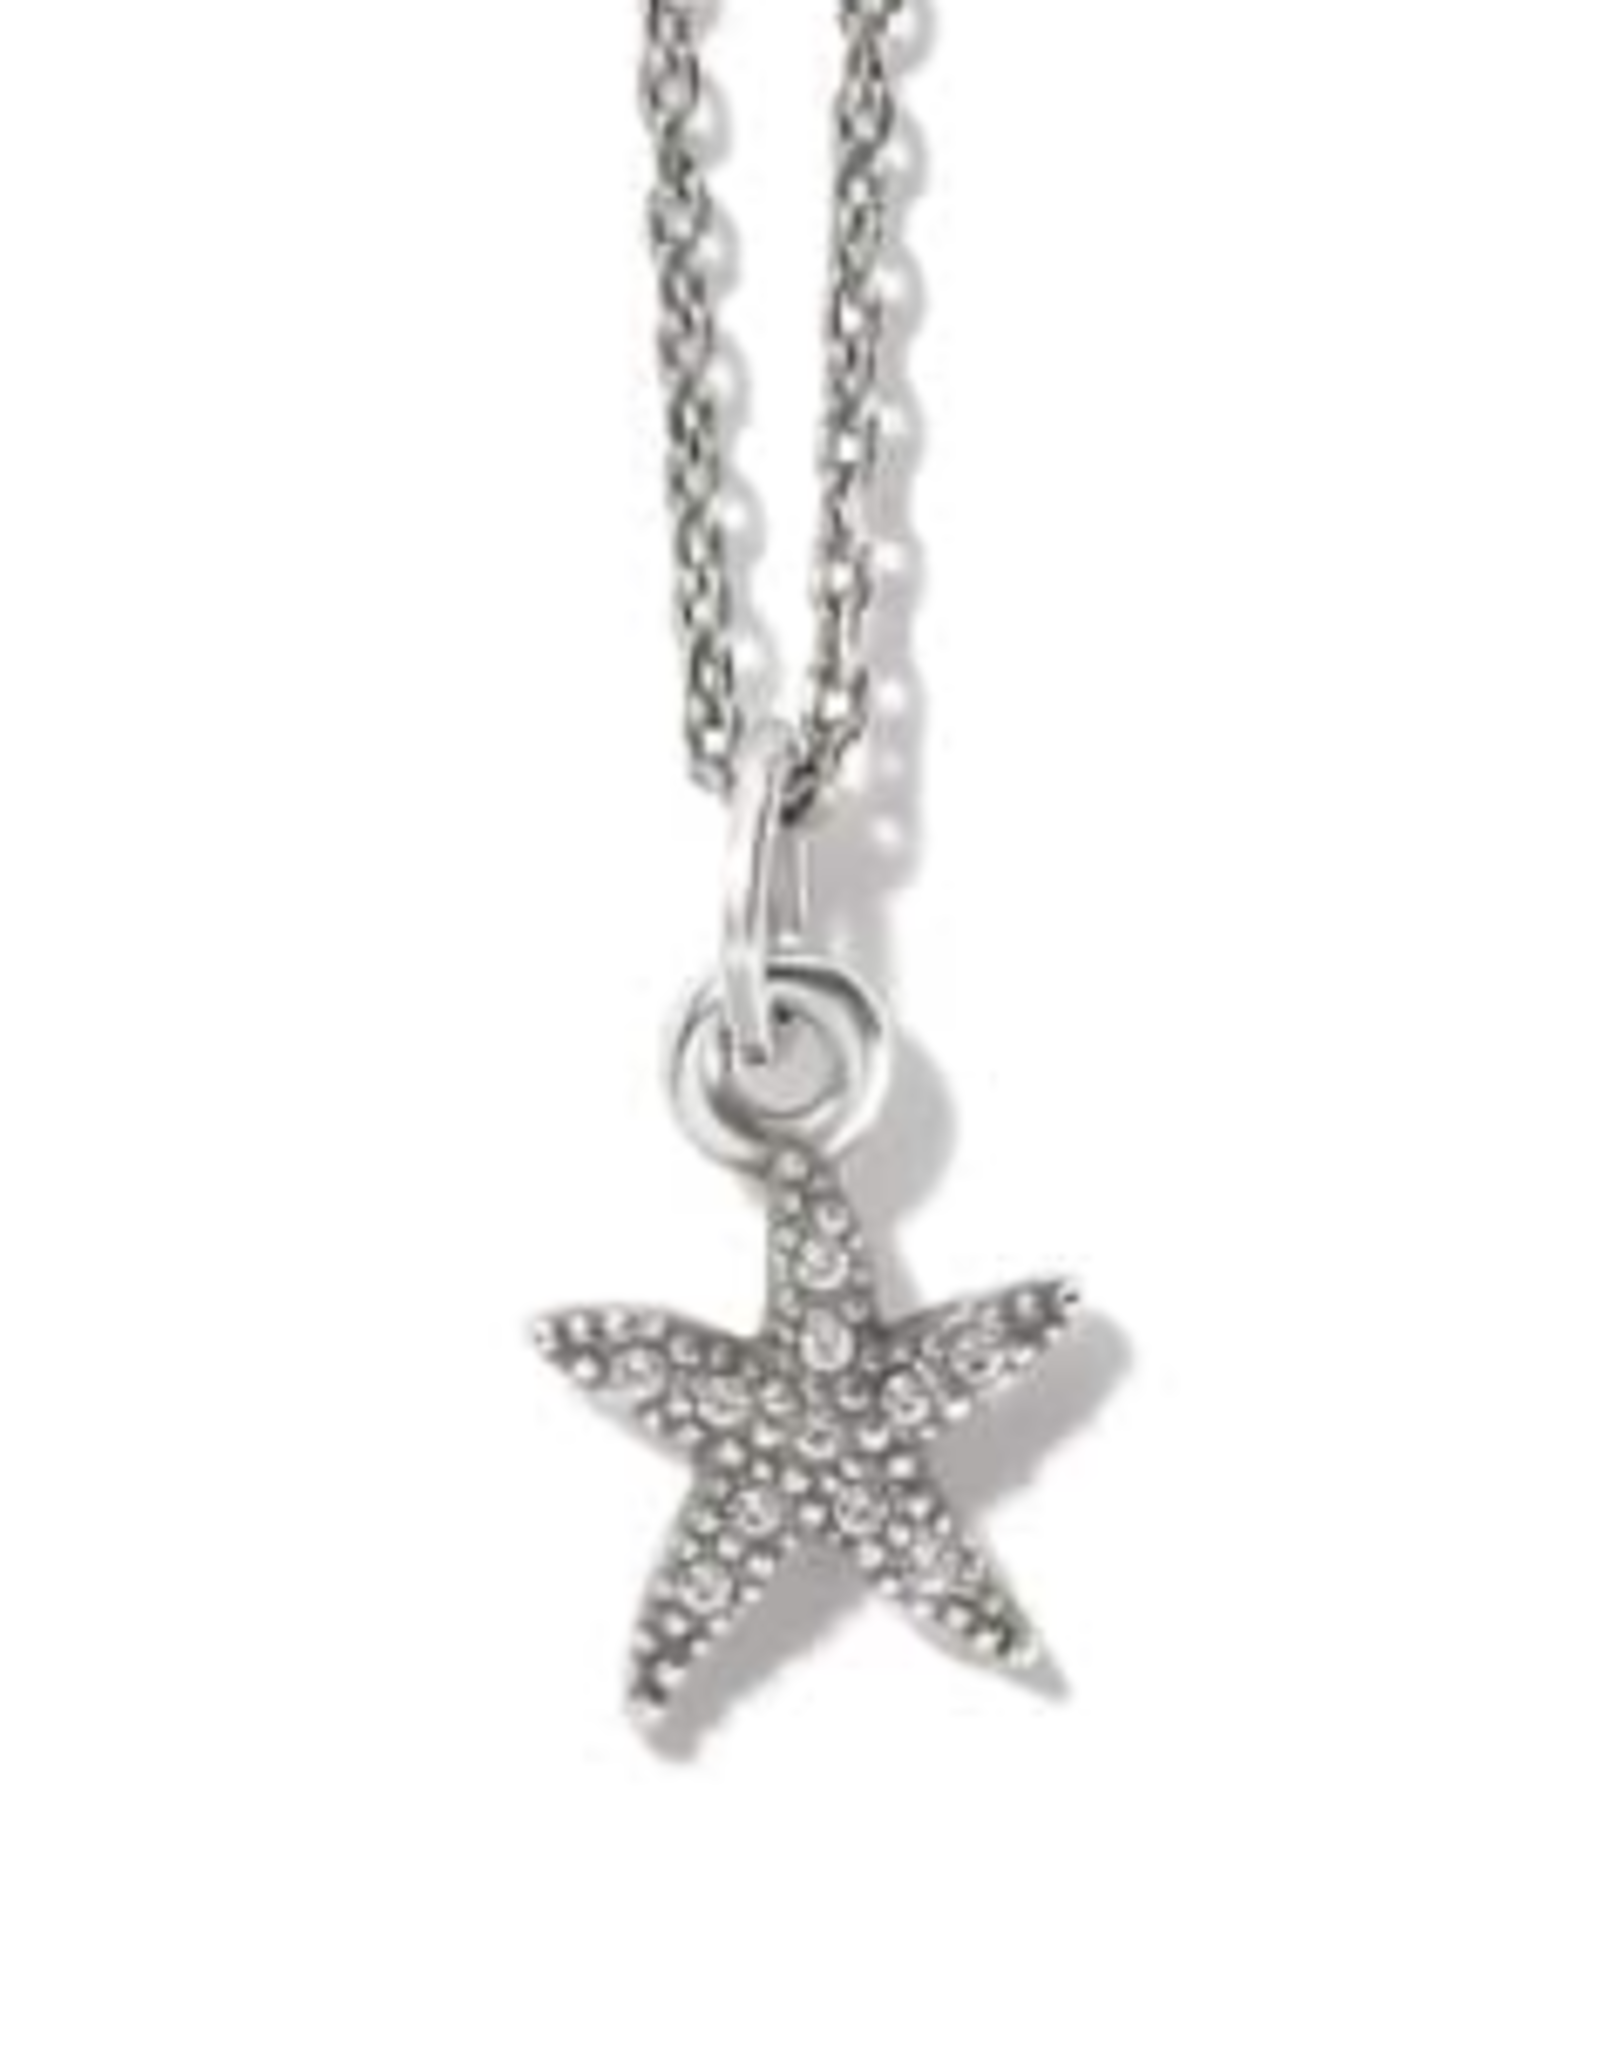 Brighton Silver Voyage Mini Starfish Necklace